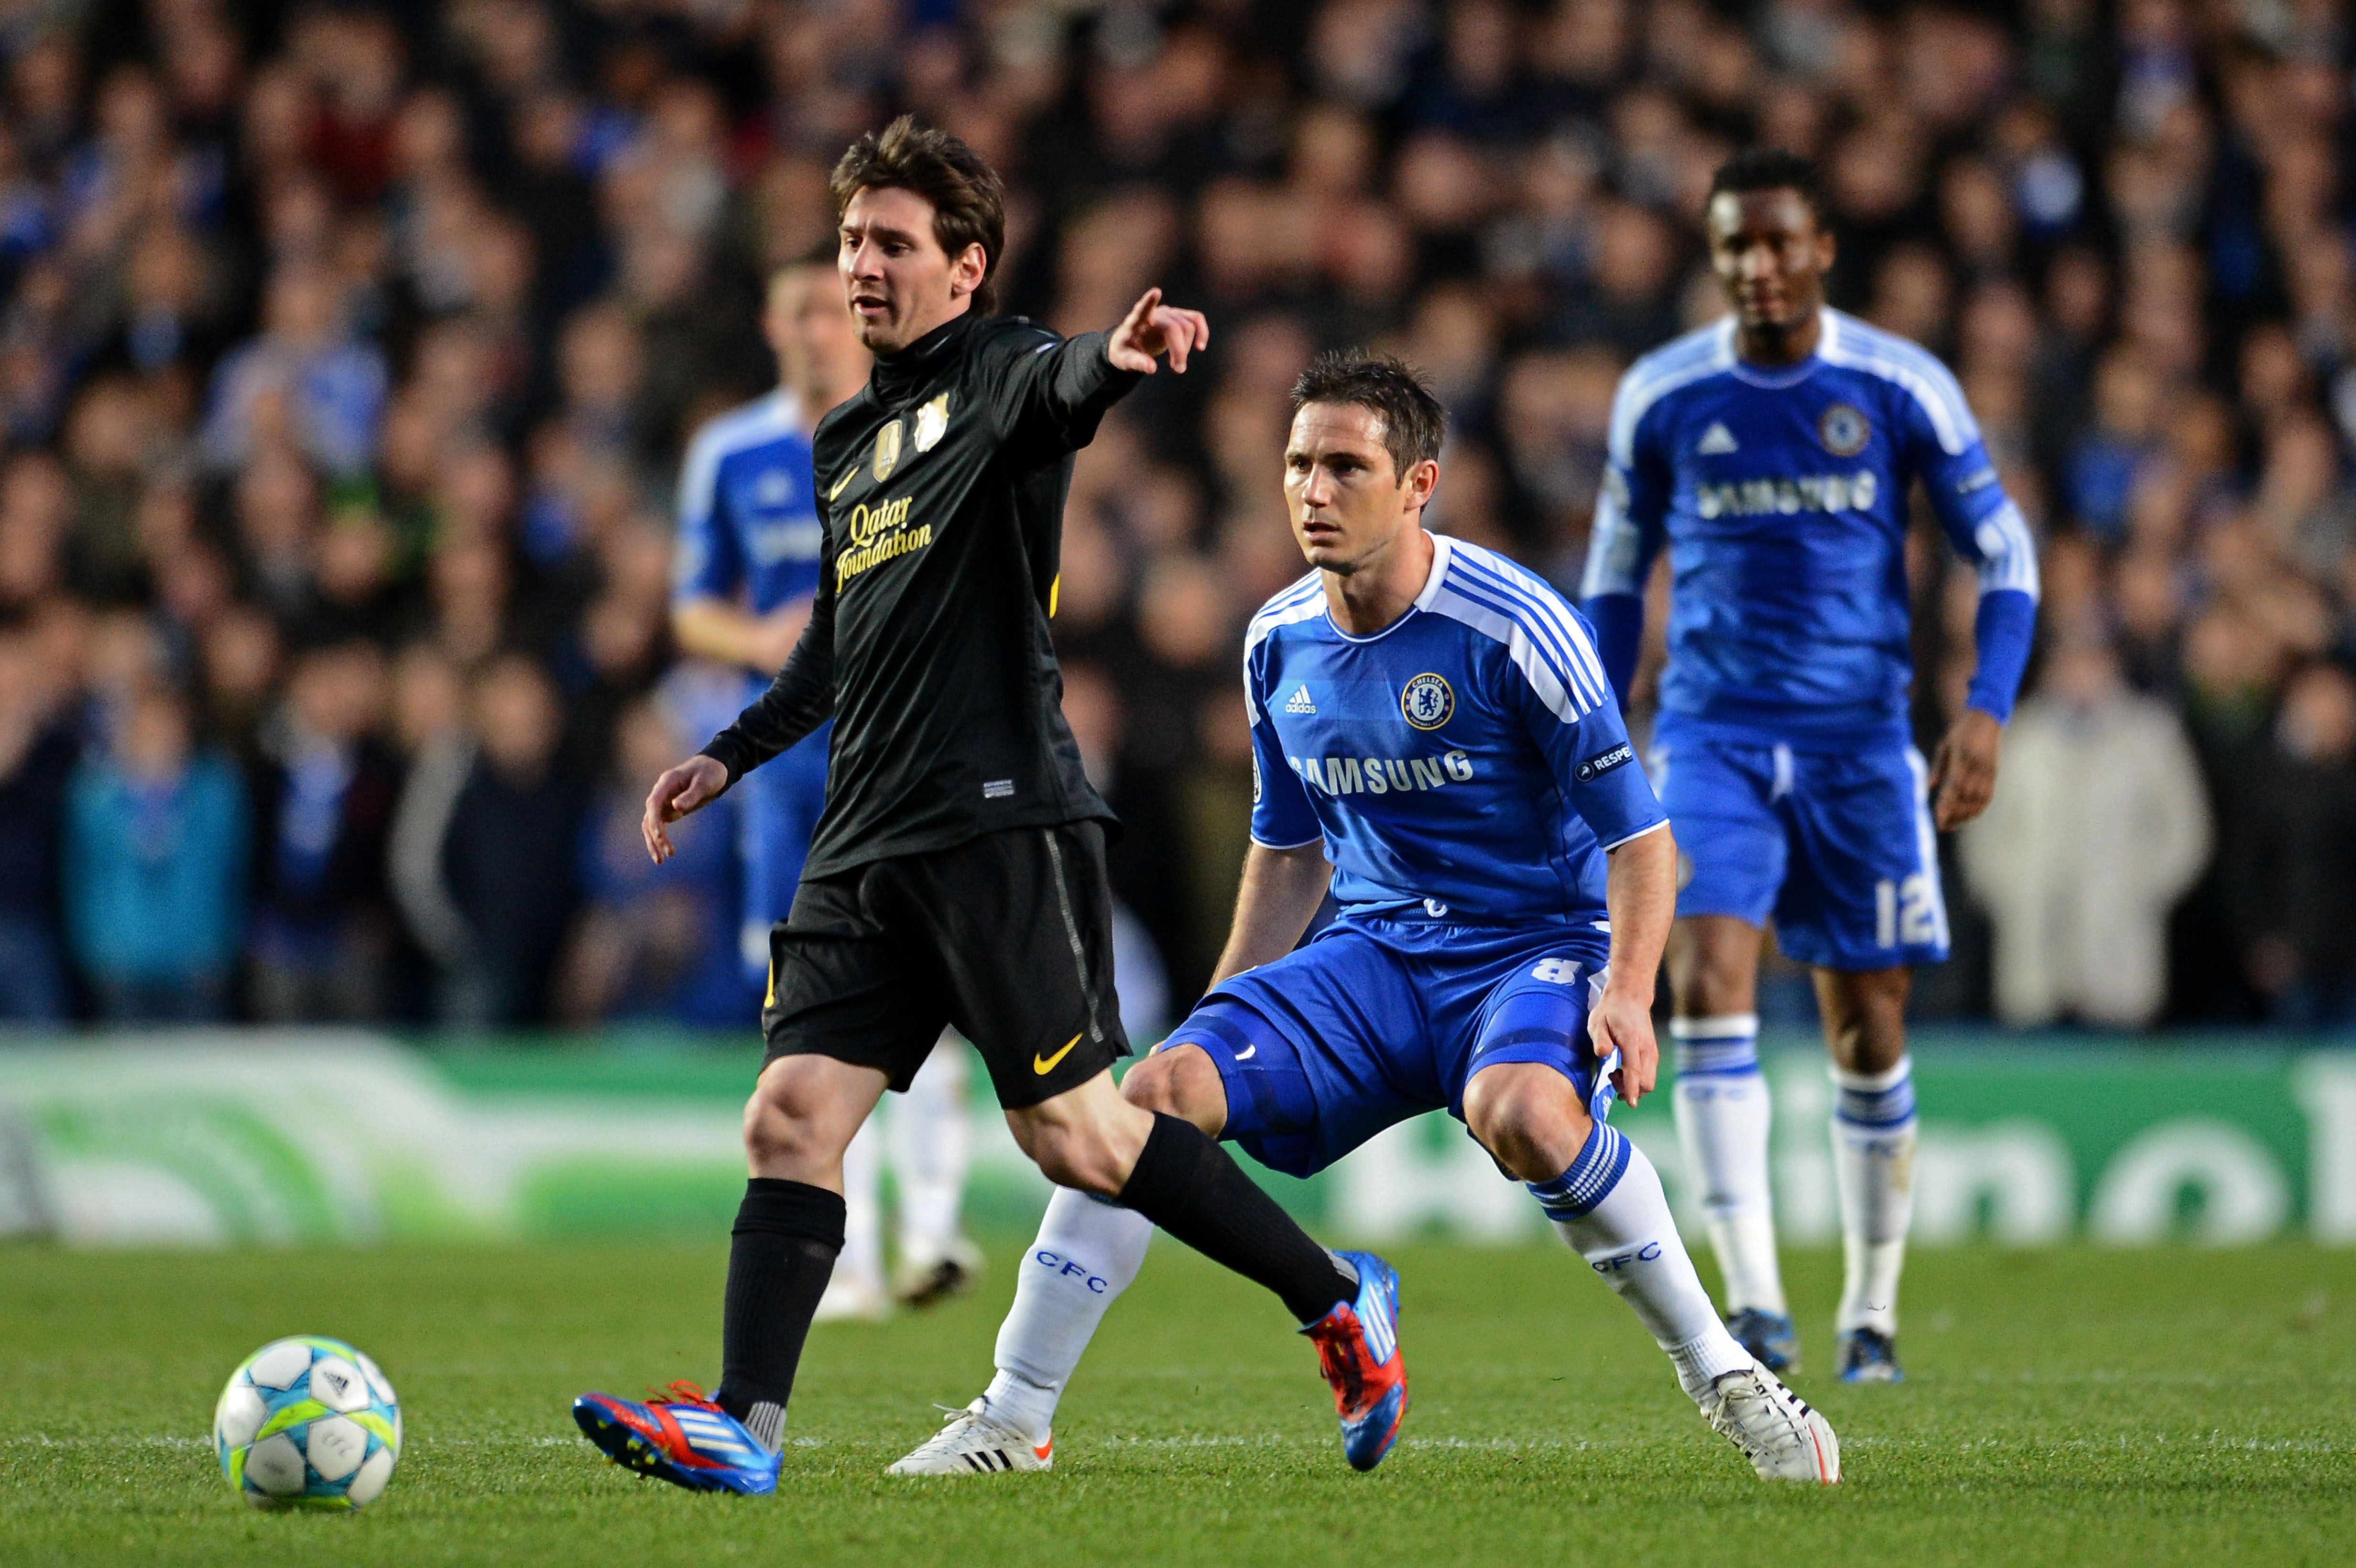 Frank Lampard stal bollen från Messi och startade kontringen till 1-0 målet.